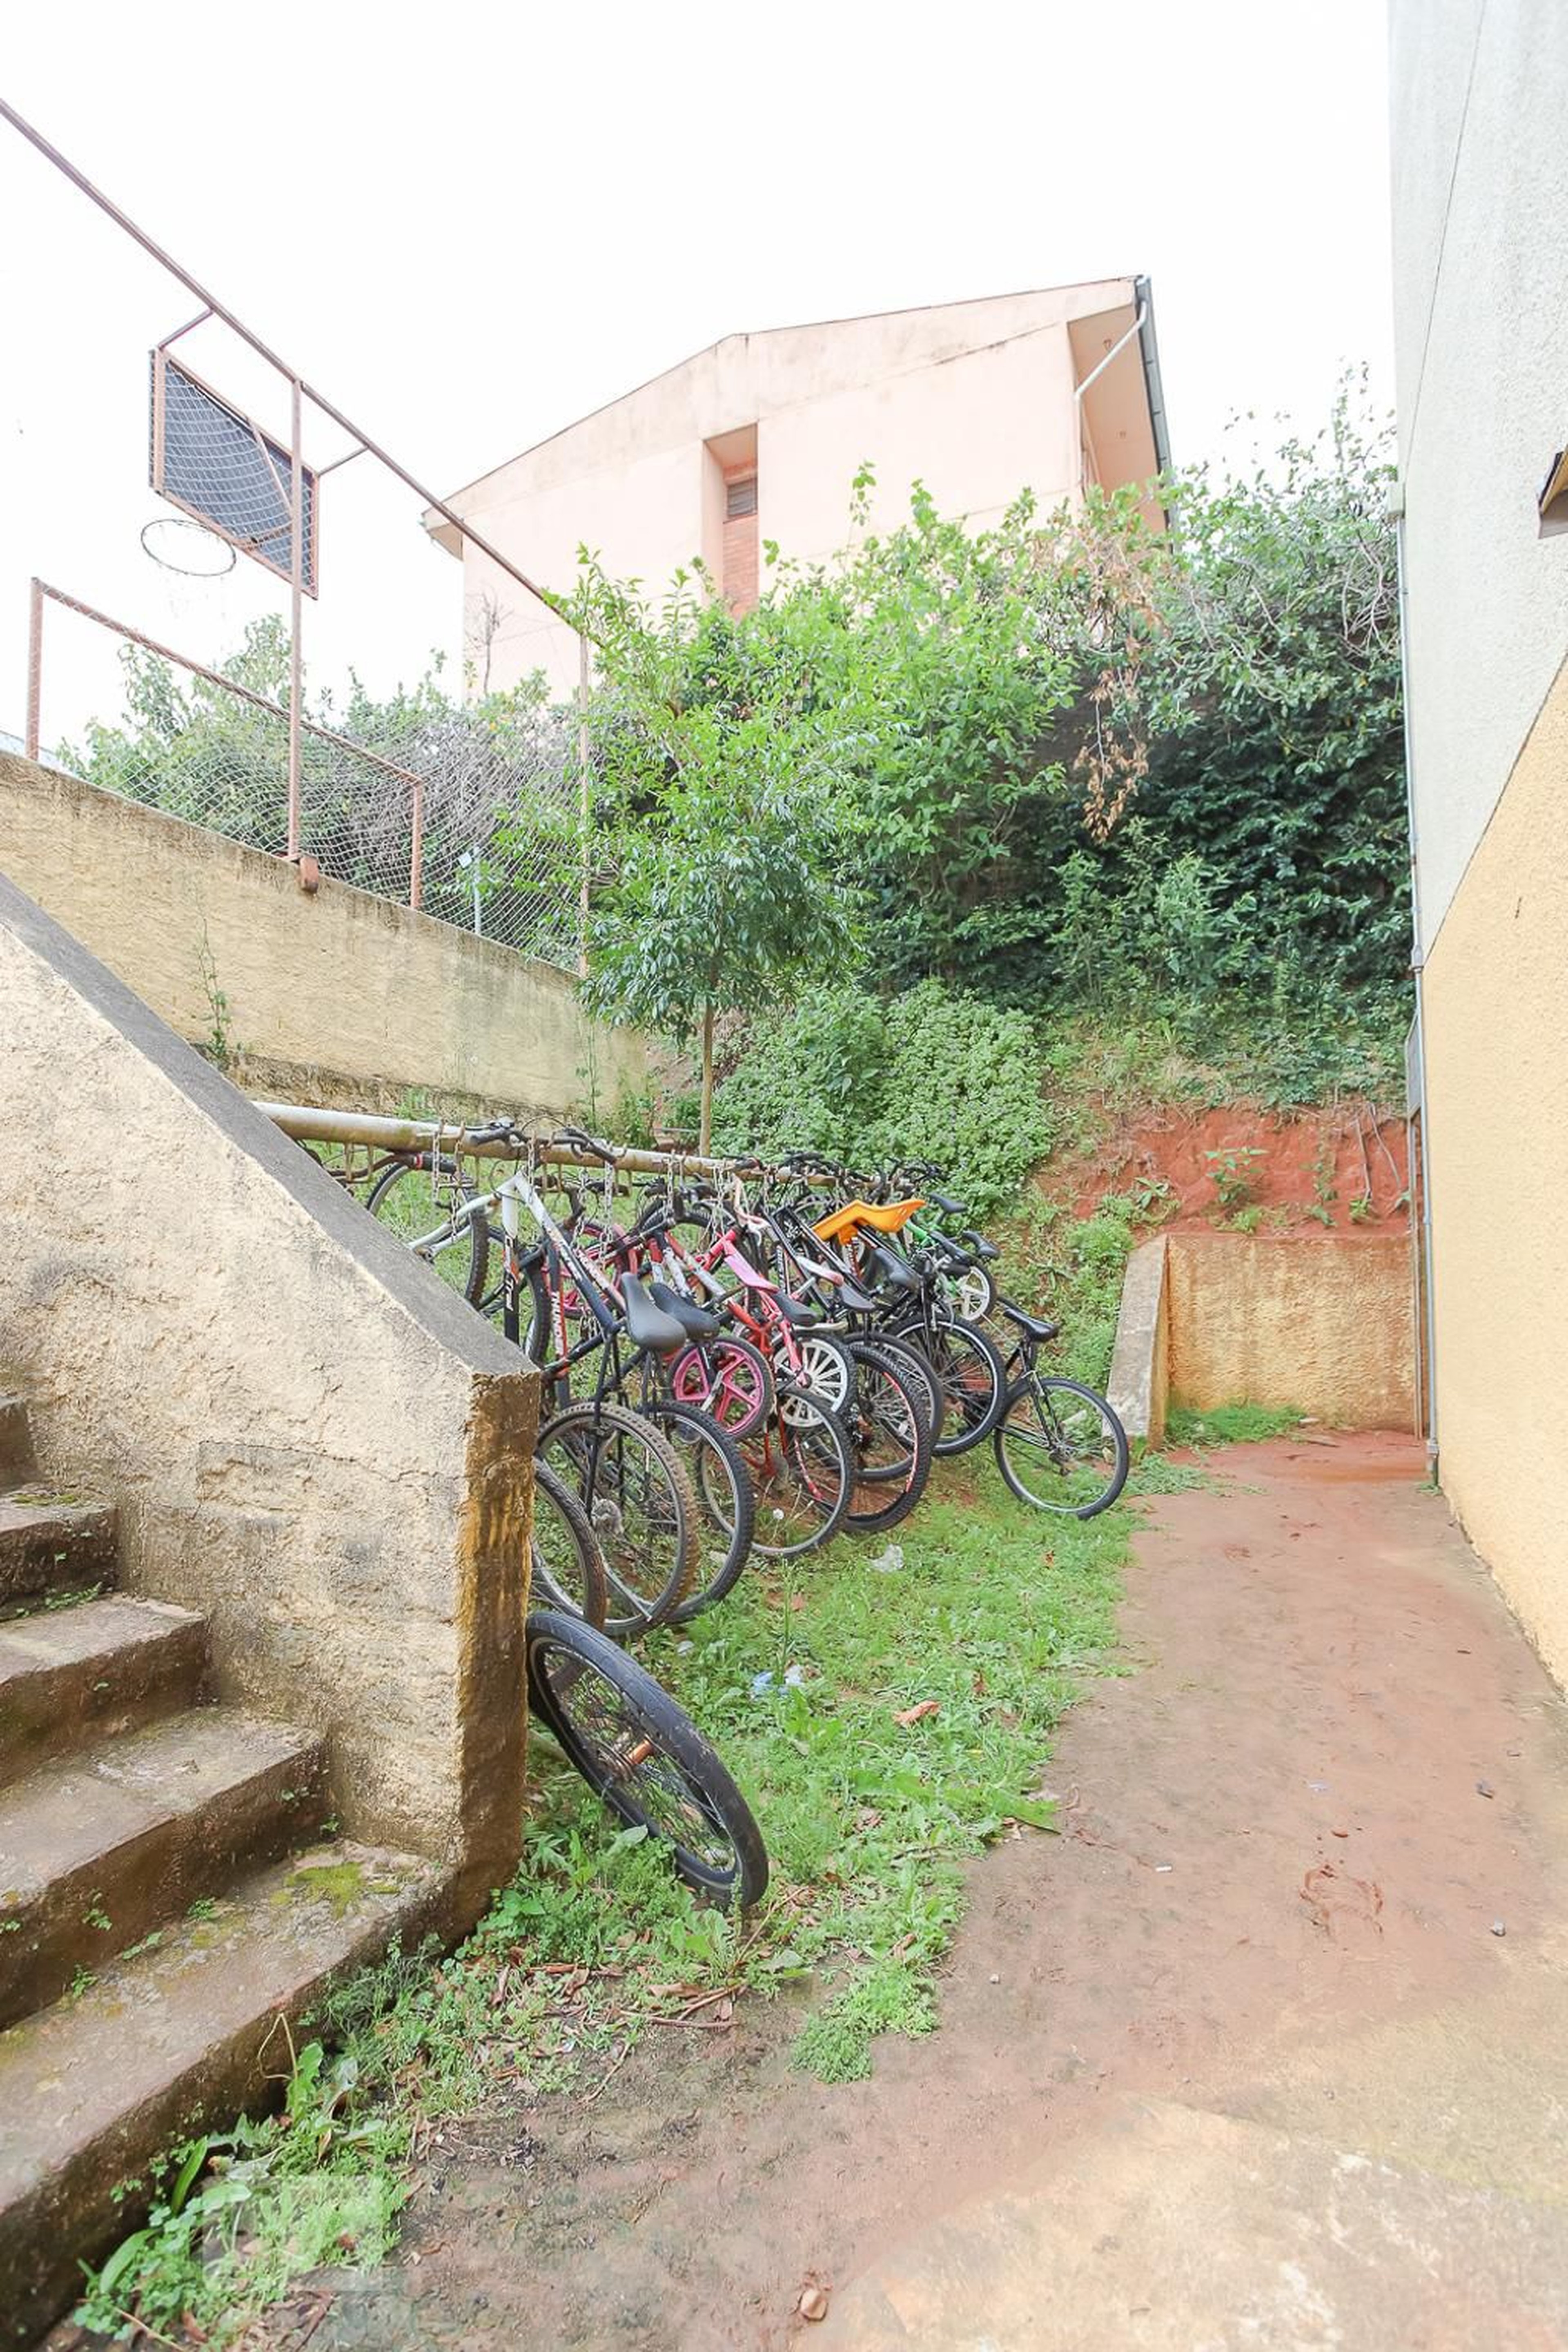 Bicicletario - Residencial Santa Fé